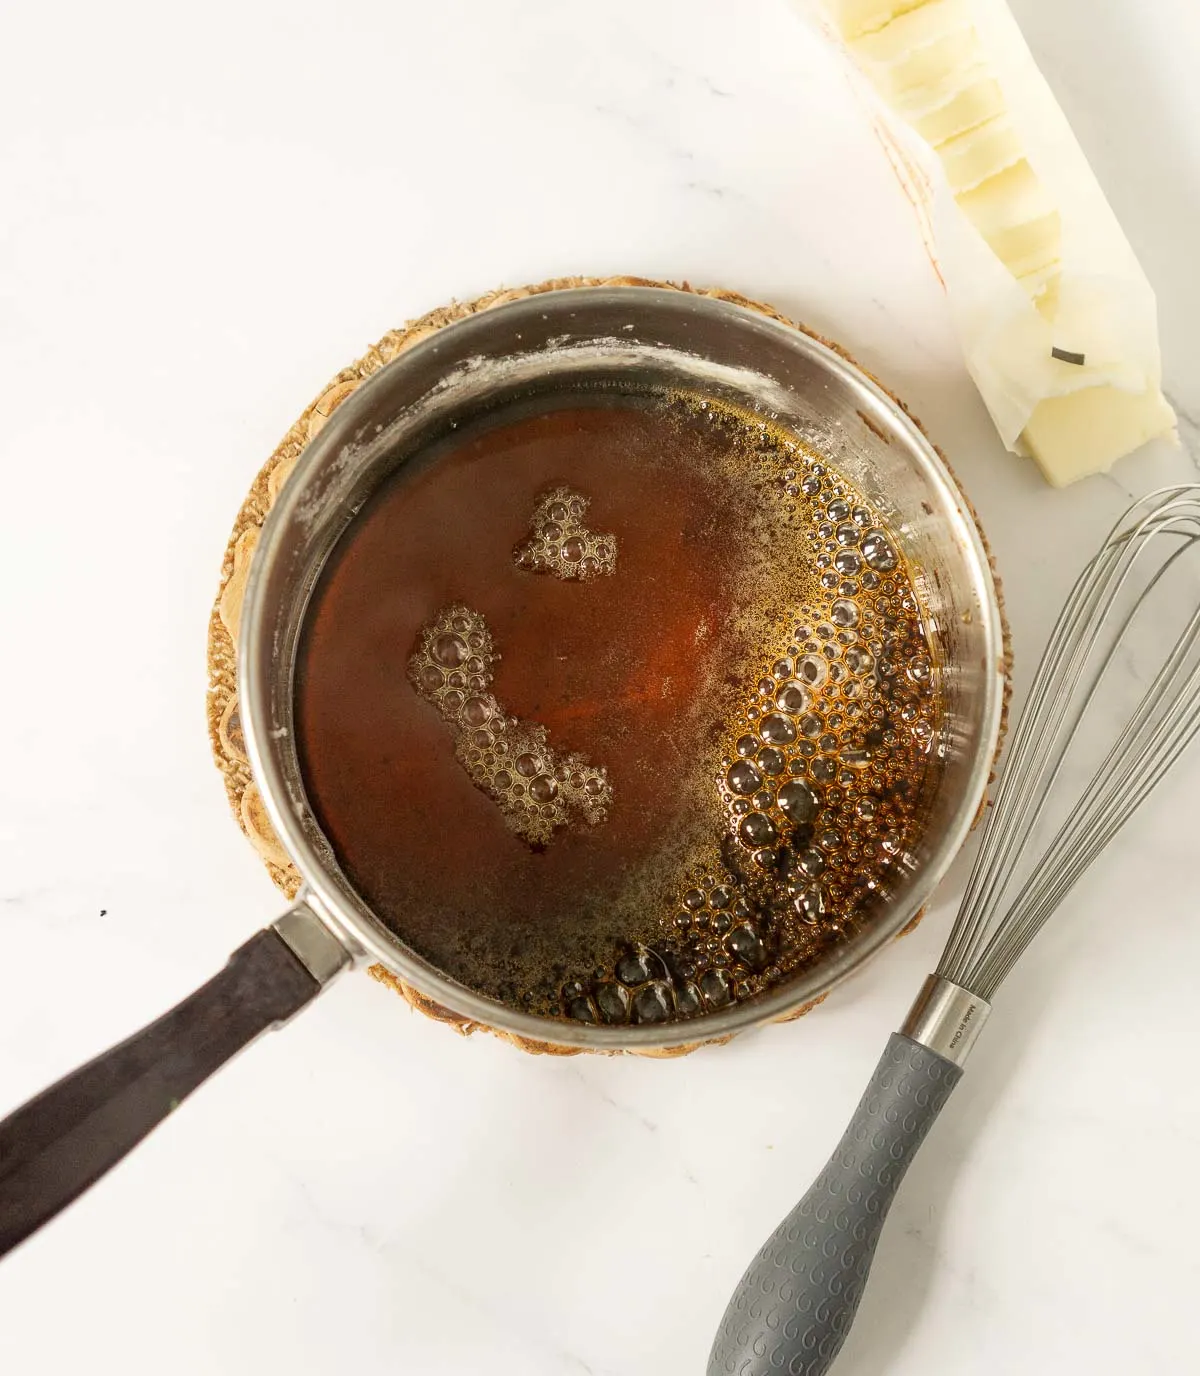 Caramelized sugar in a pot